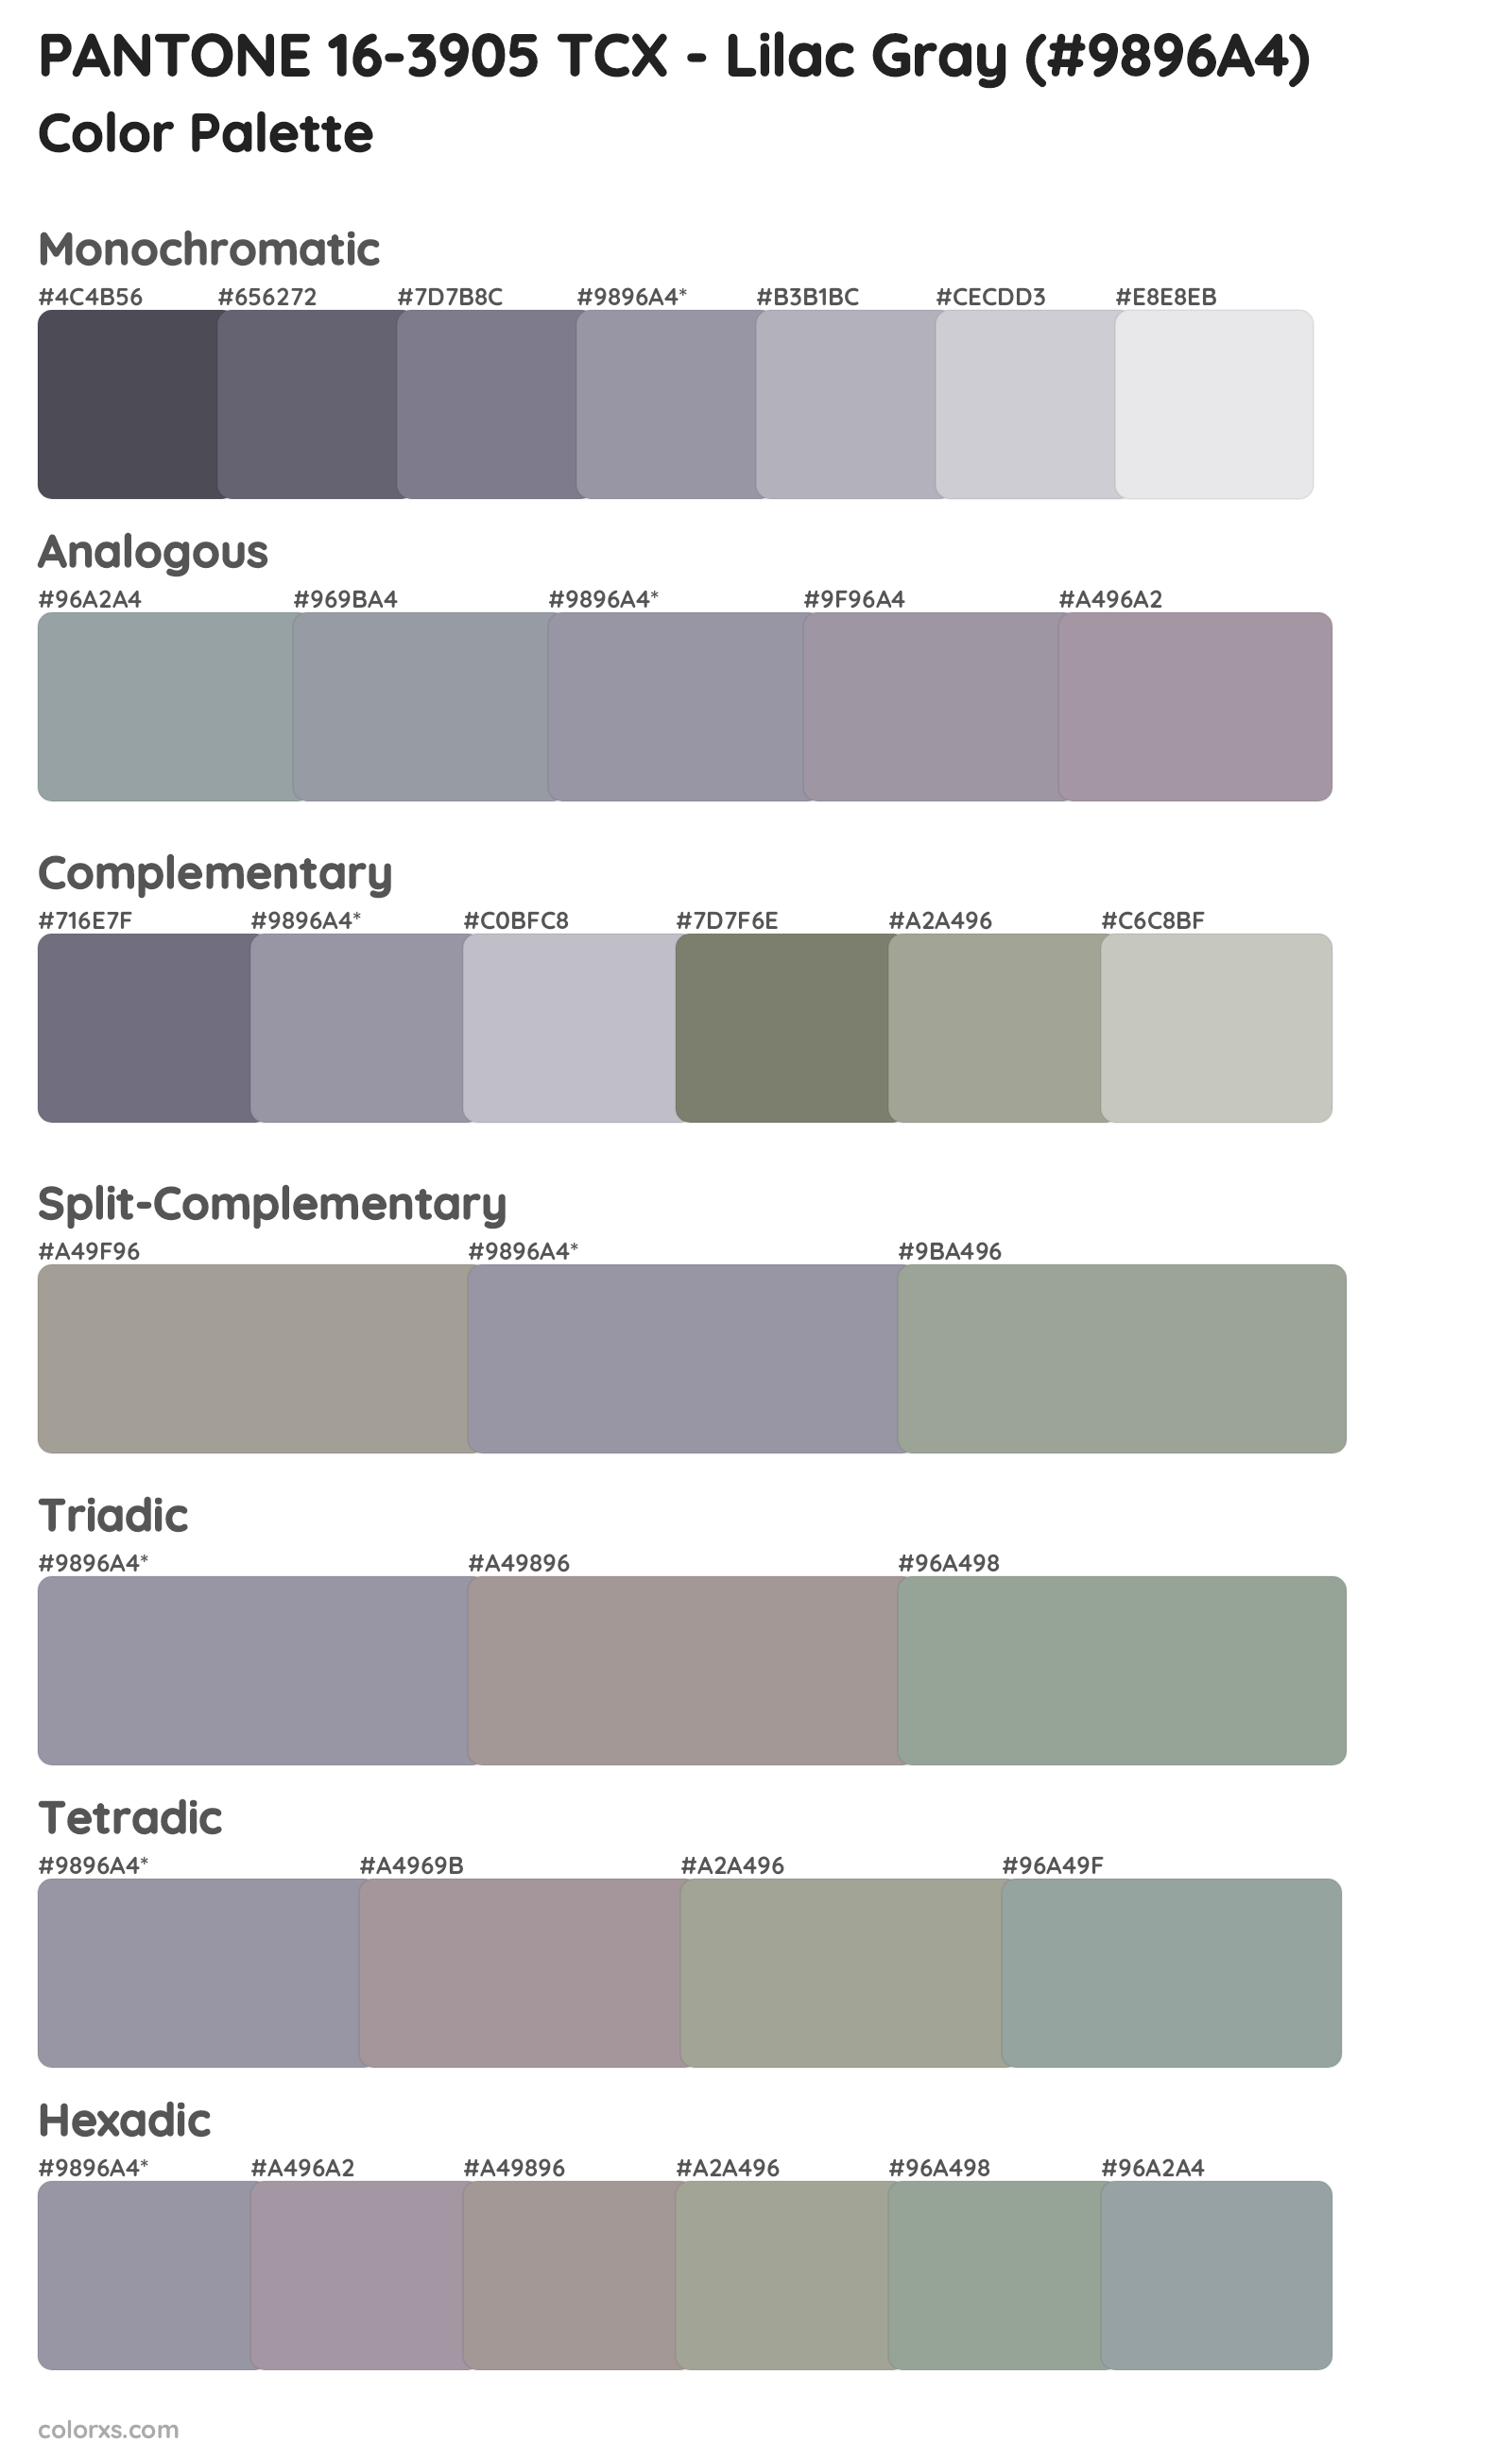 PANTONE 16-3905 TCX - Lilac Gray Color Scheme Palettes